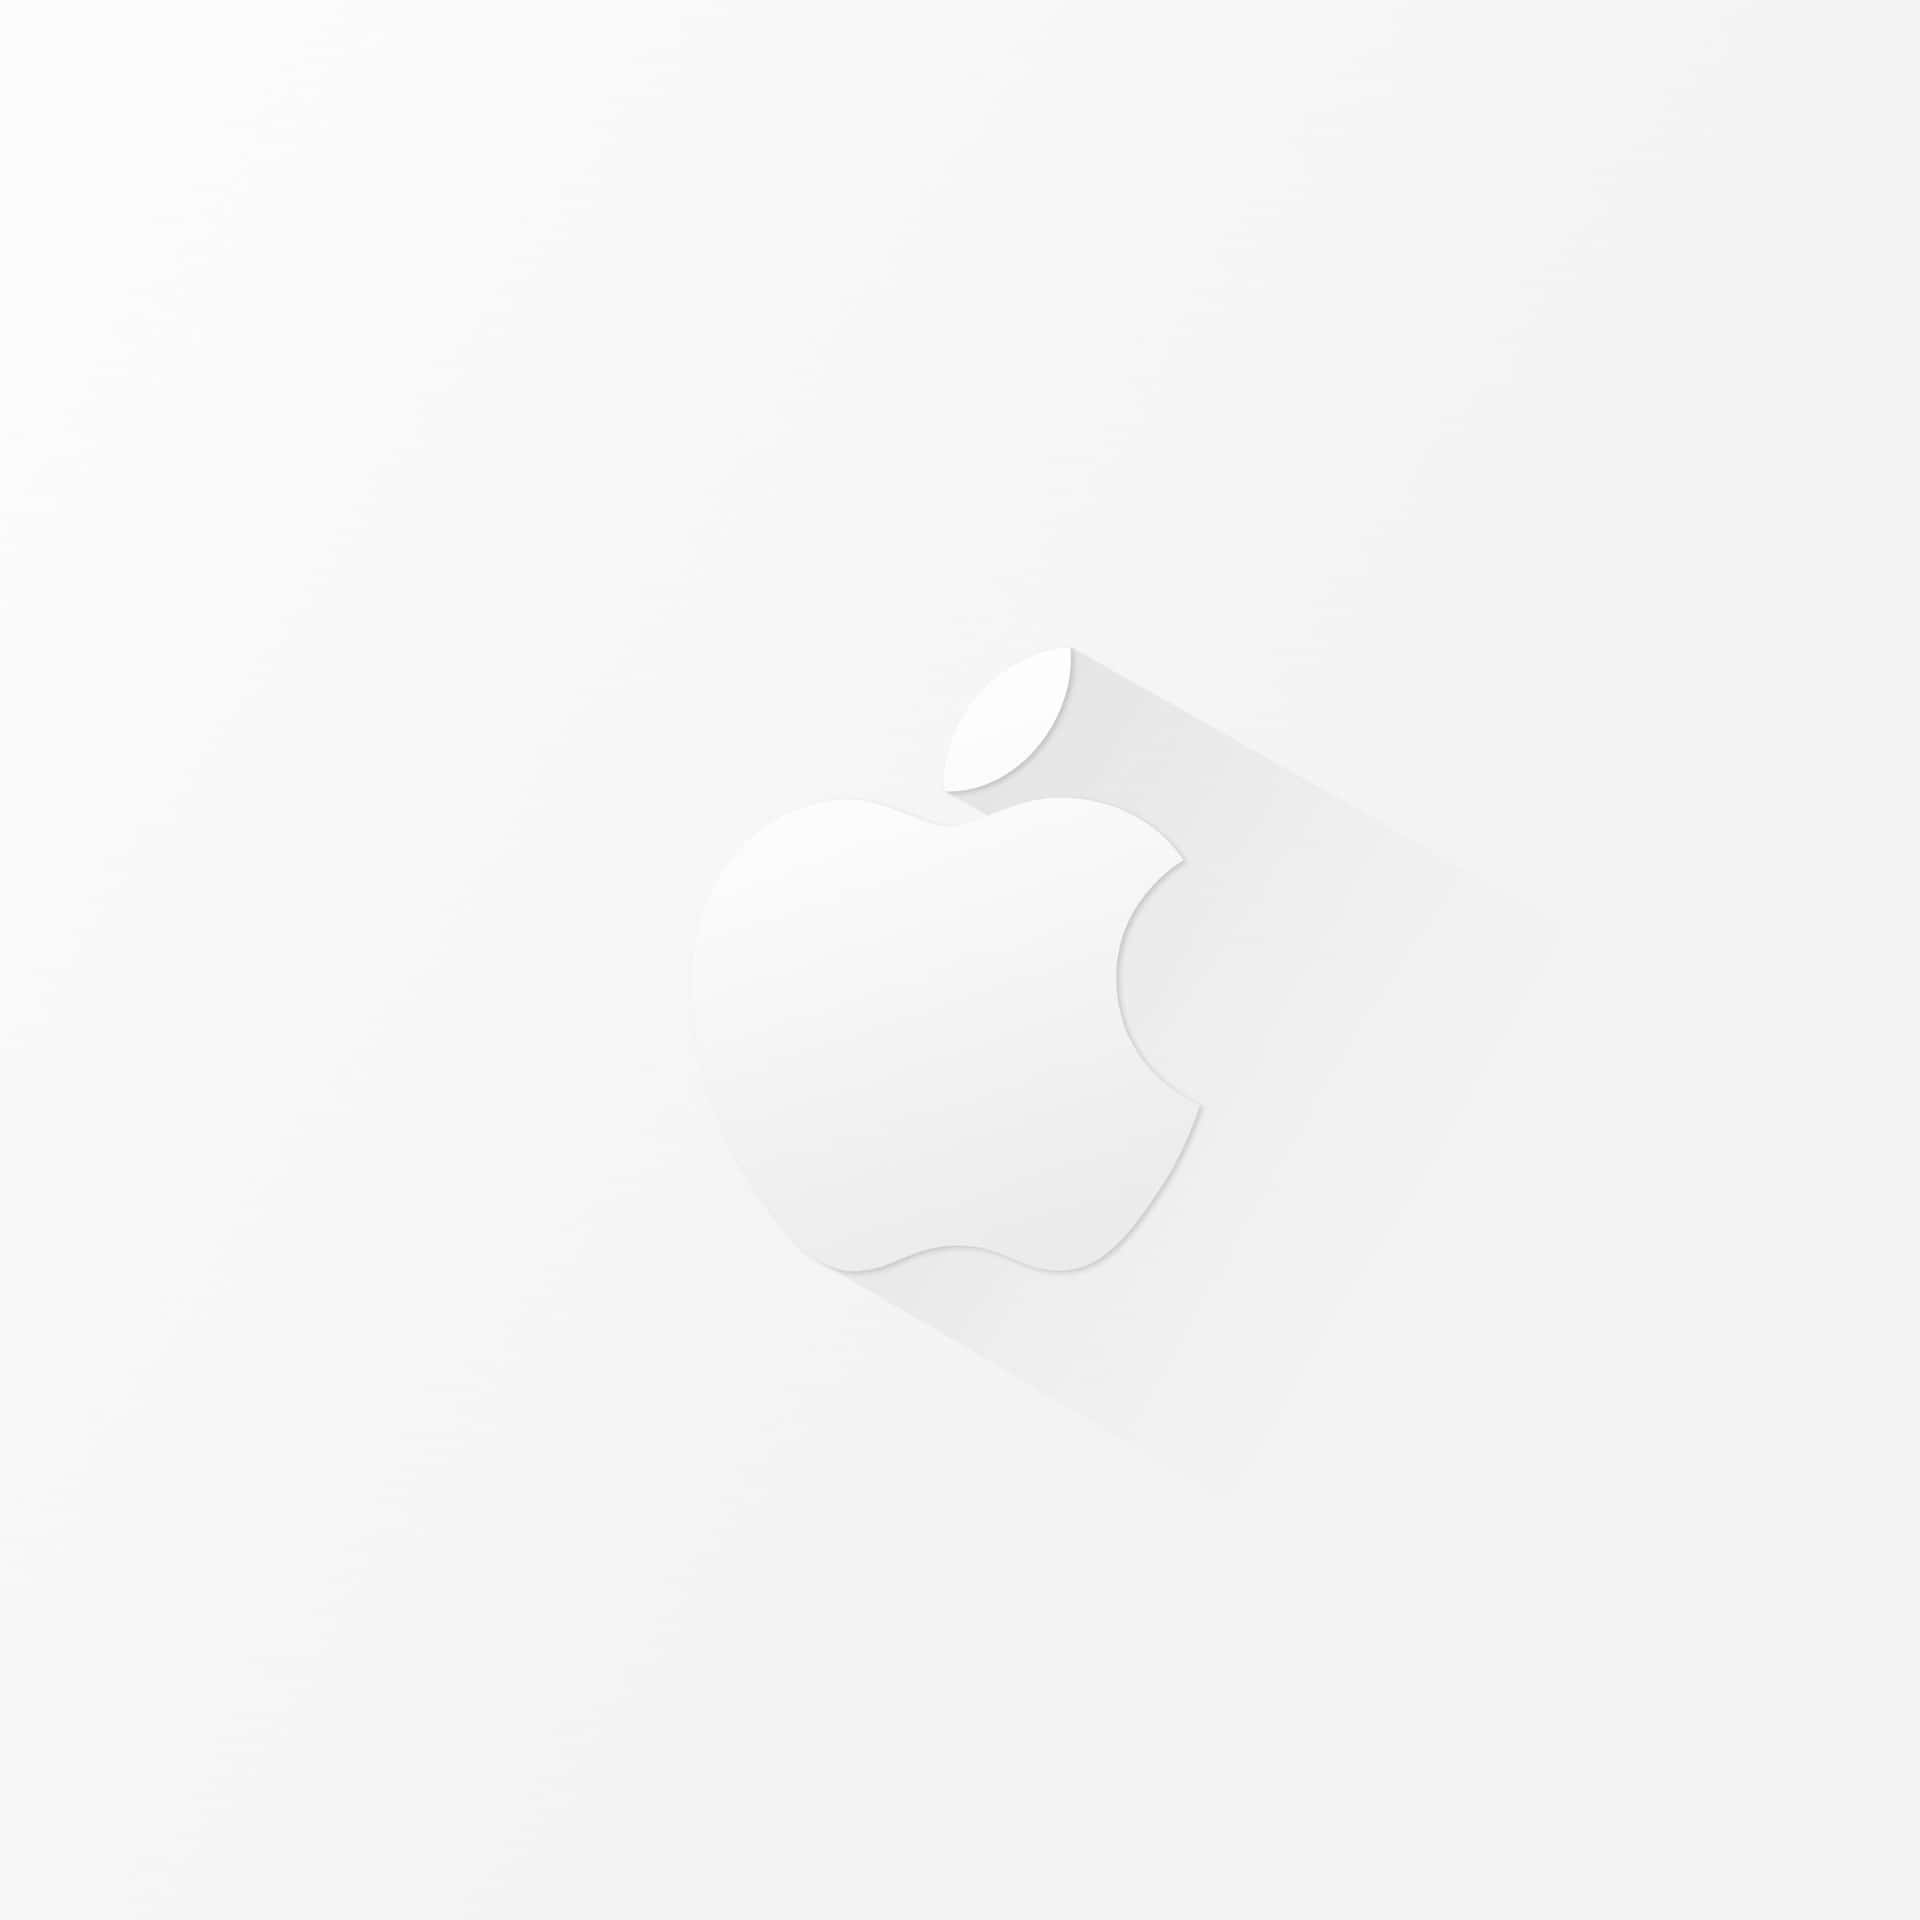 Papelde Parede Minimalista Com O Logo Da Apple Em Branco Para Ipad. Papel de Parede